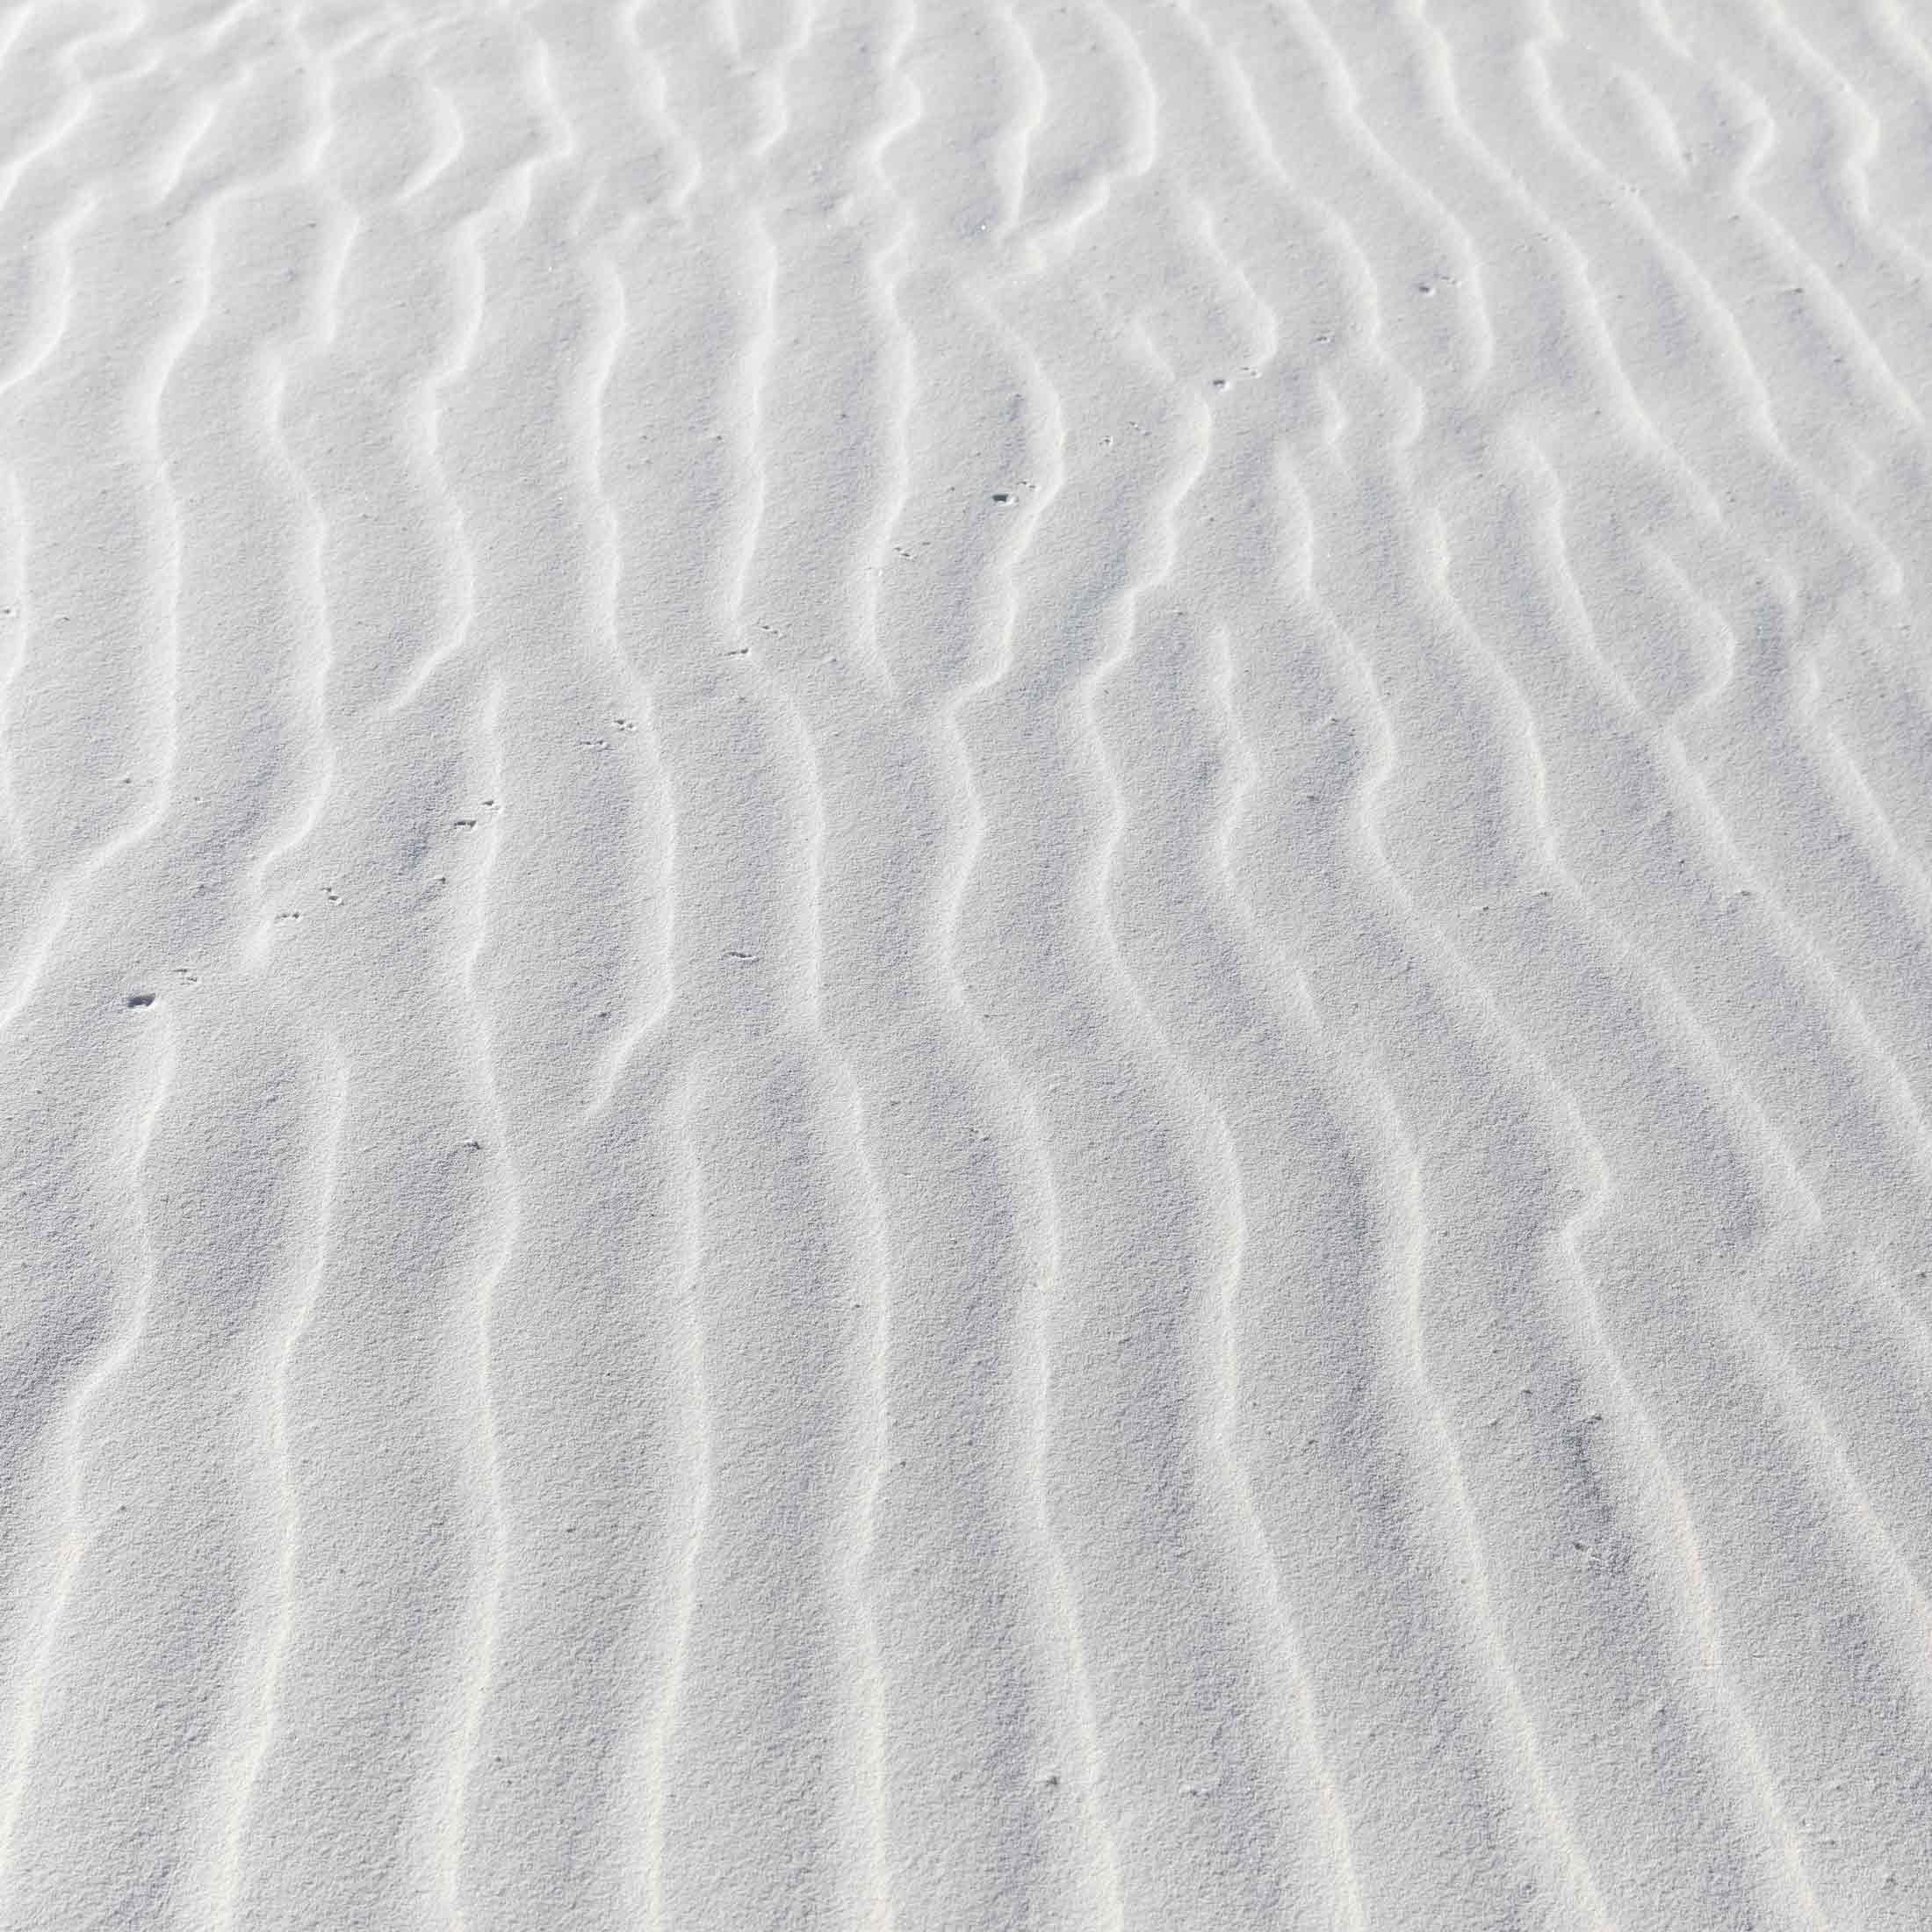 white sand dune texture